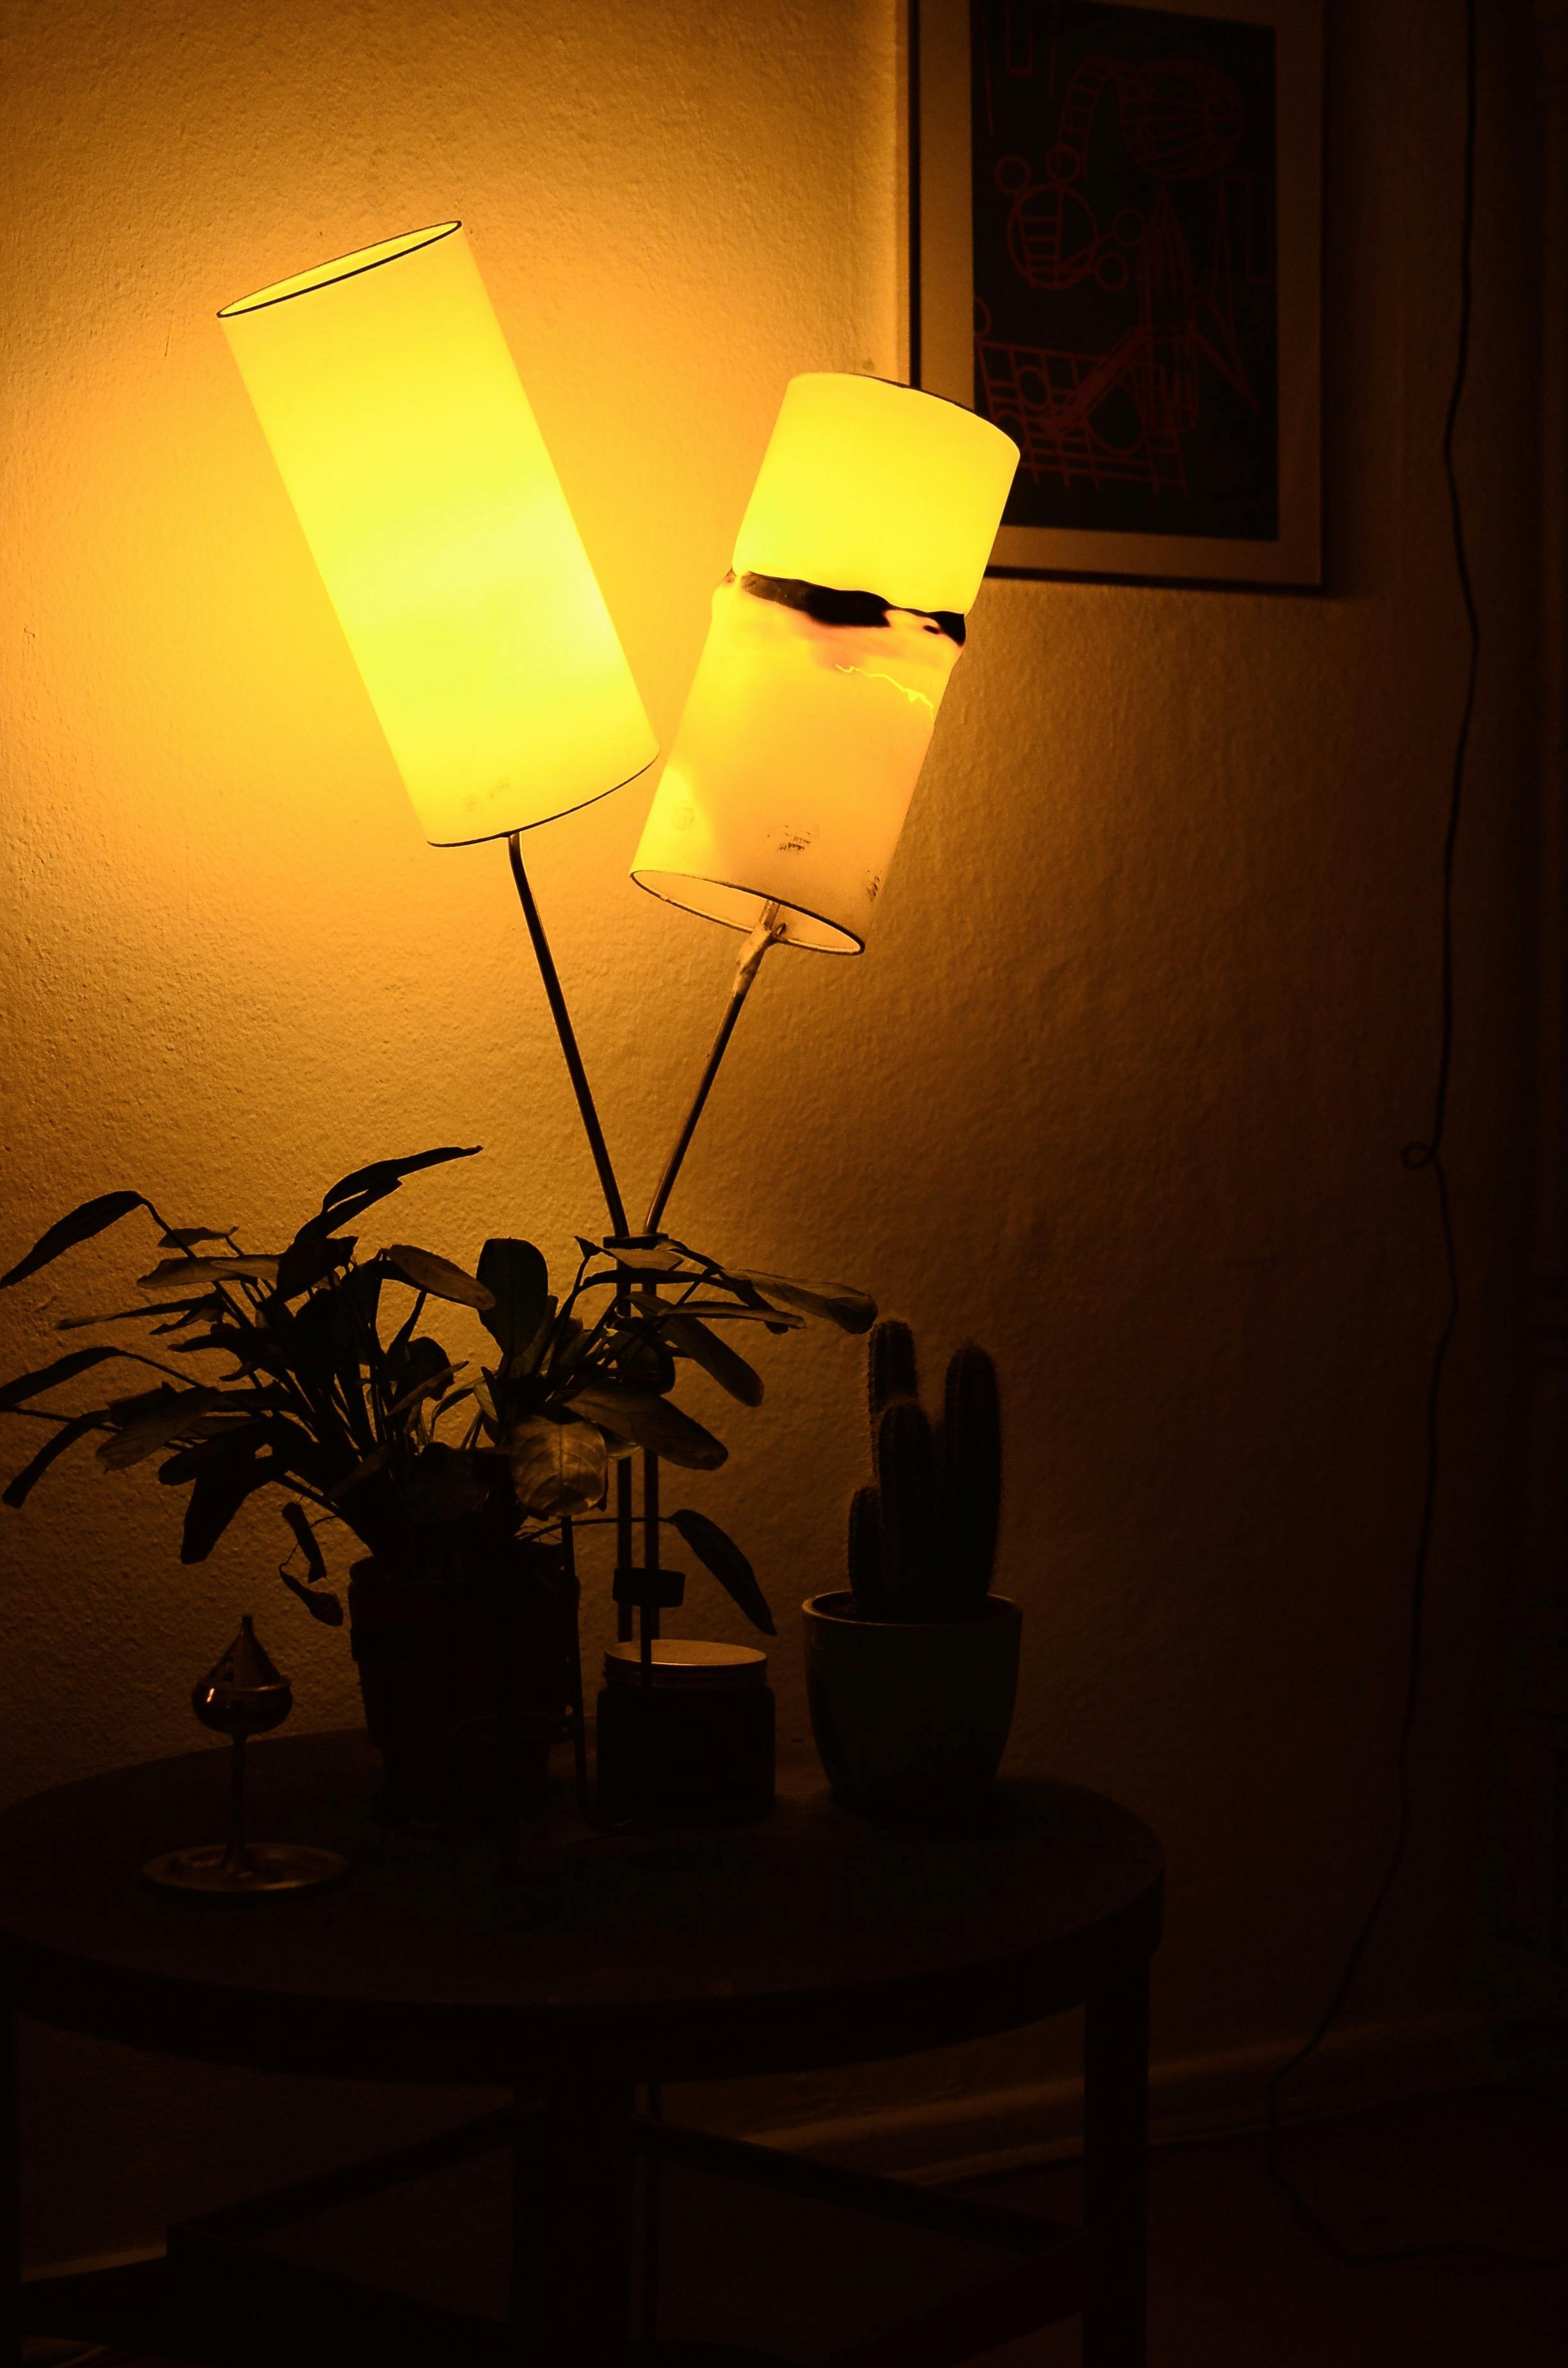 lamp in a dark room